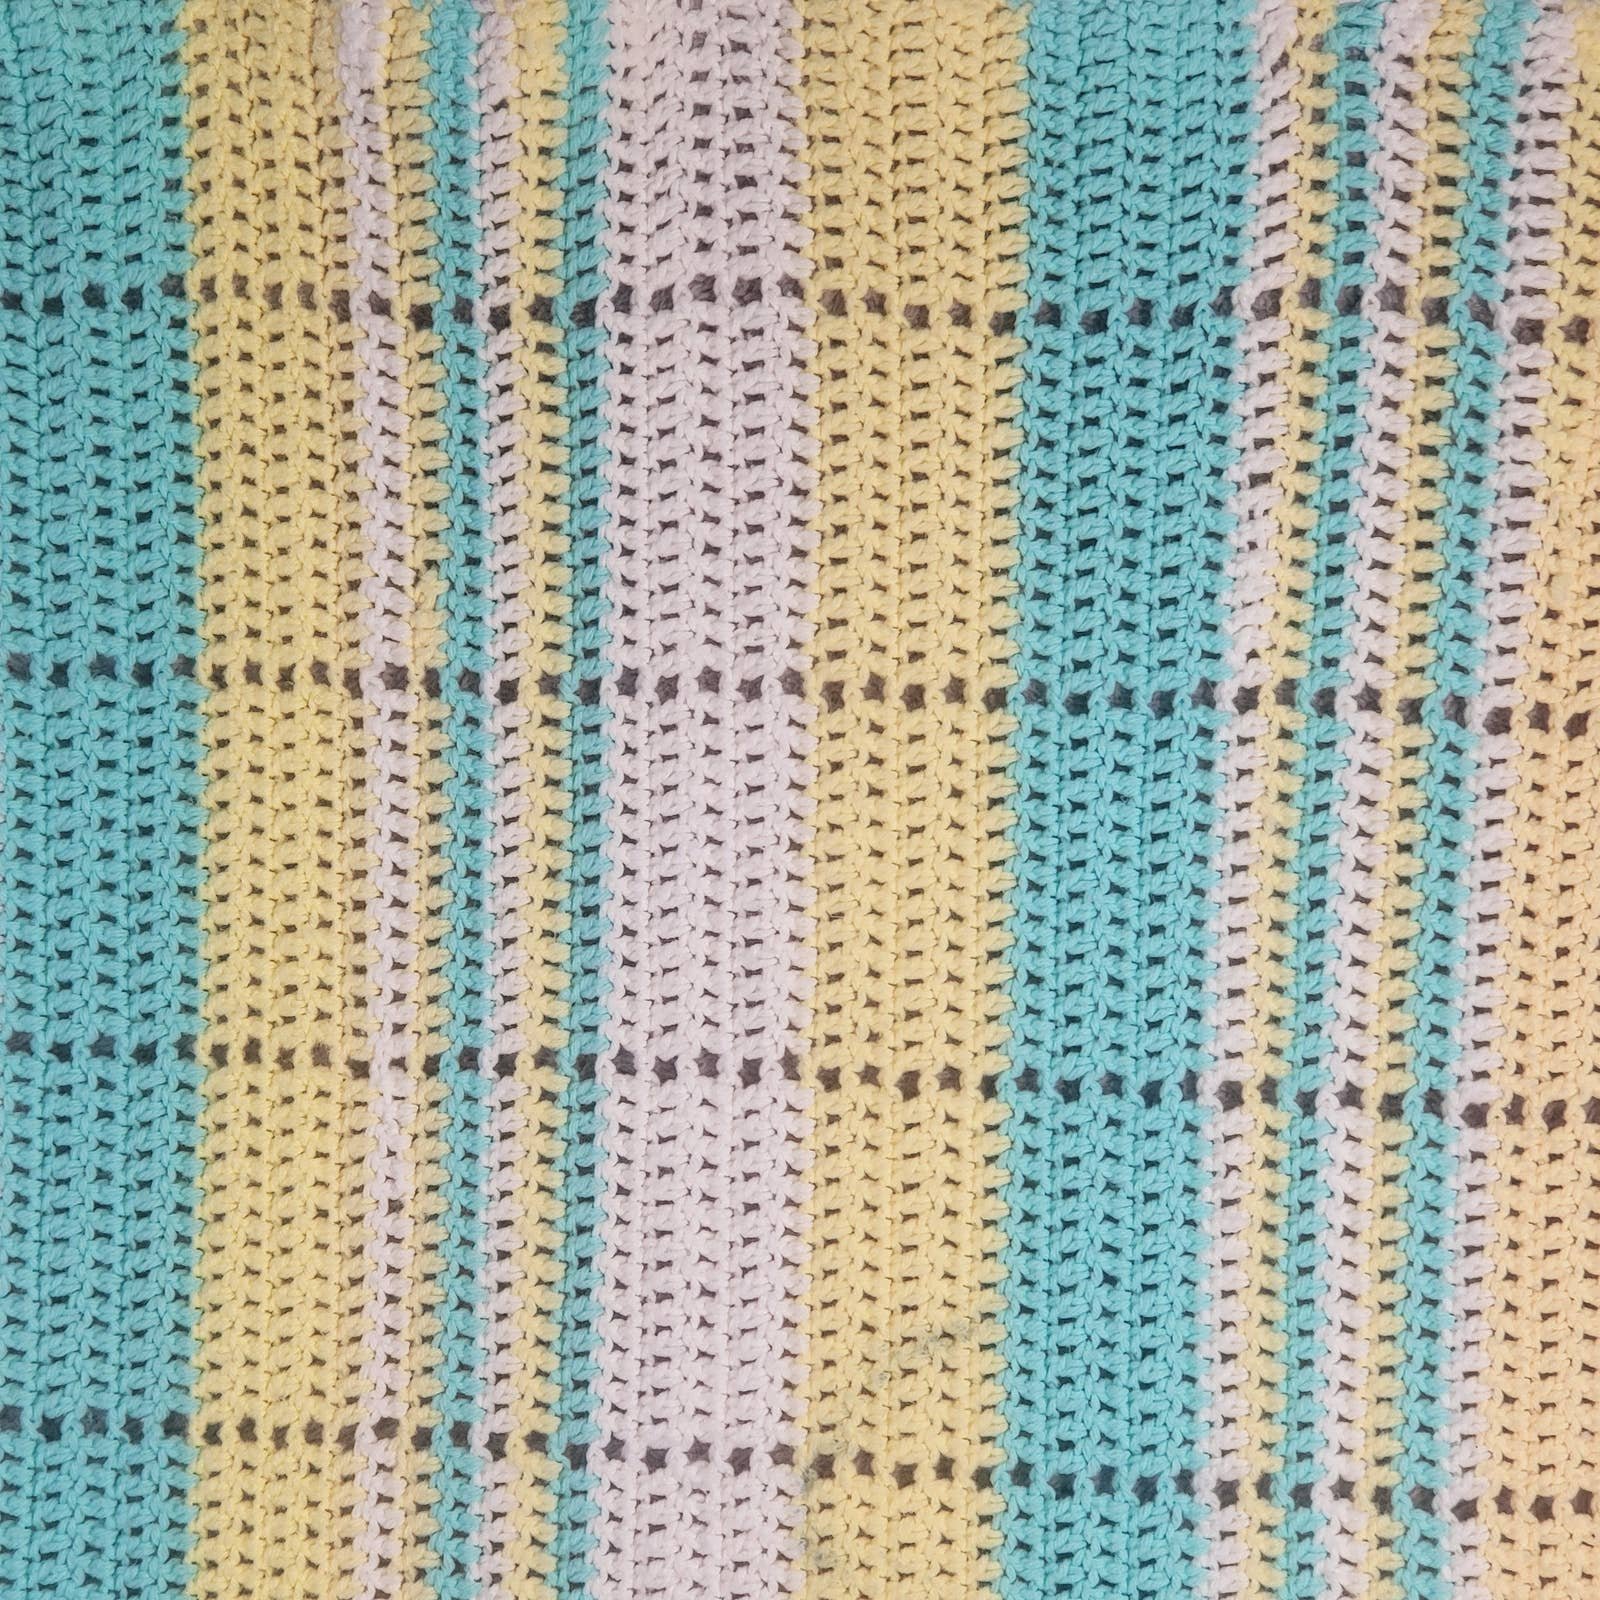 Vintage Handmade Knitted Afghan Throw Blanket 72